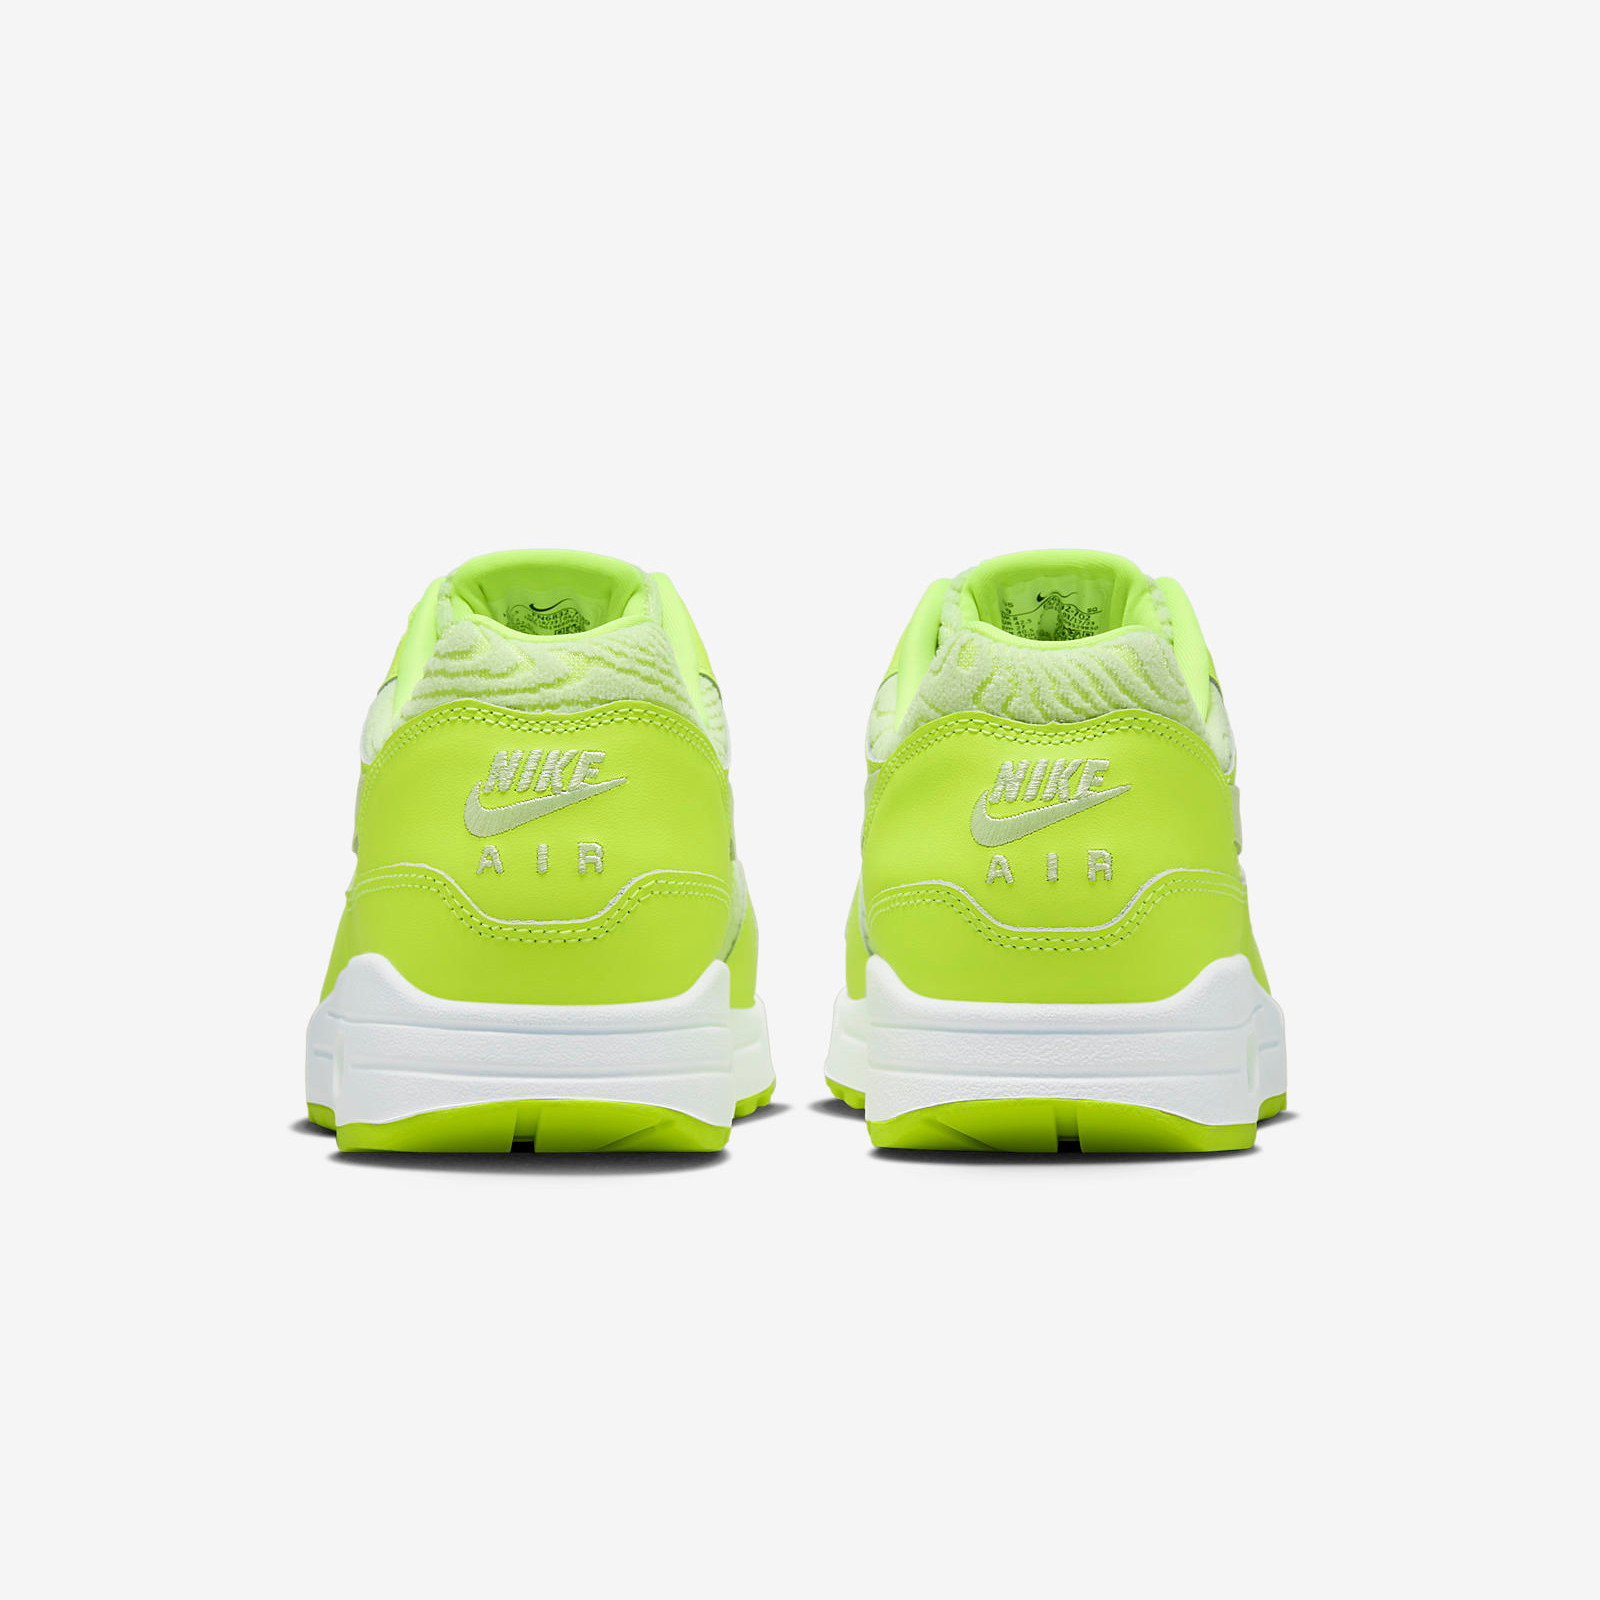 Nike Air Max 1 PRM
« Volt »